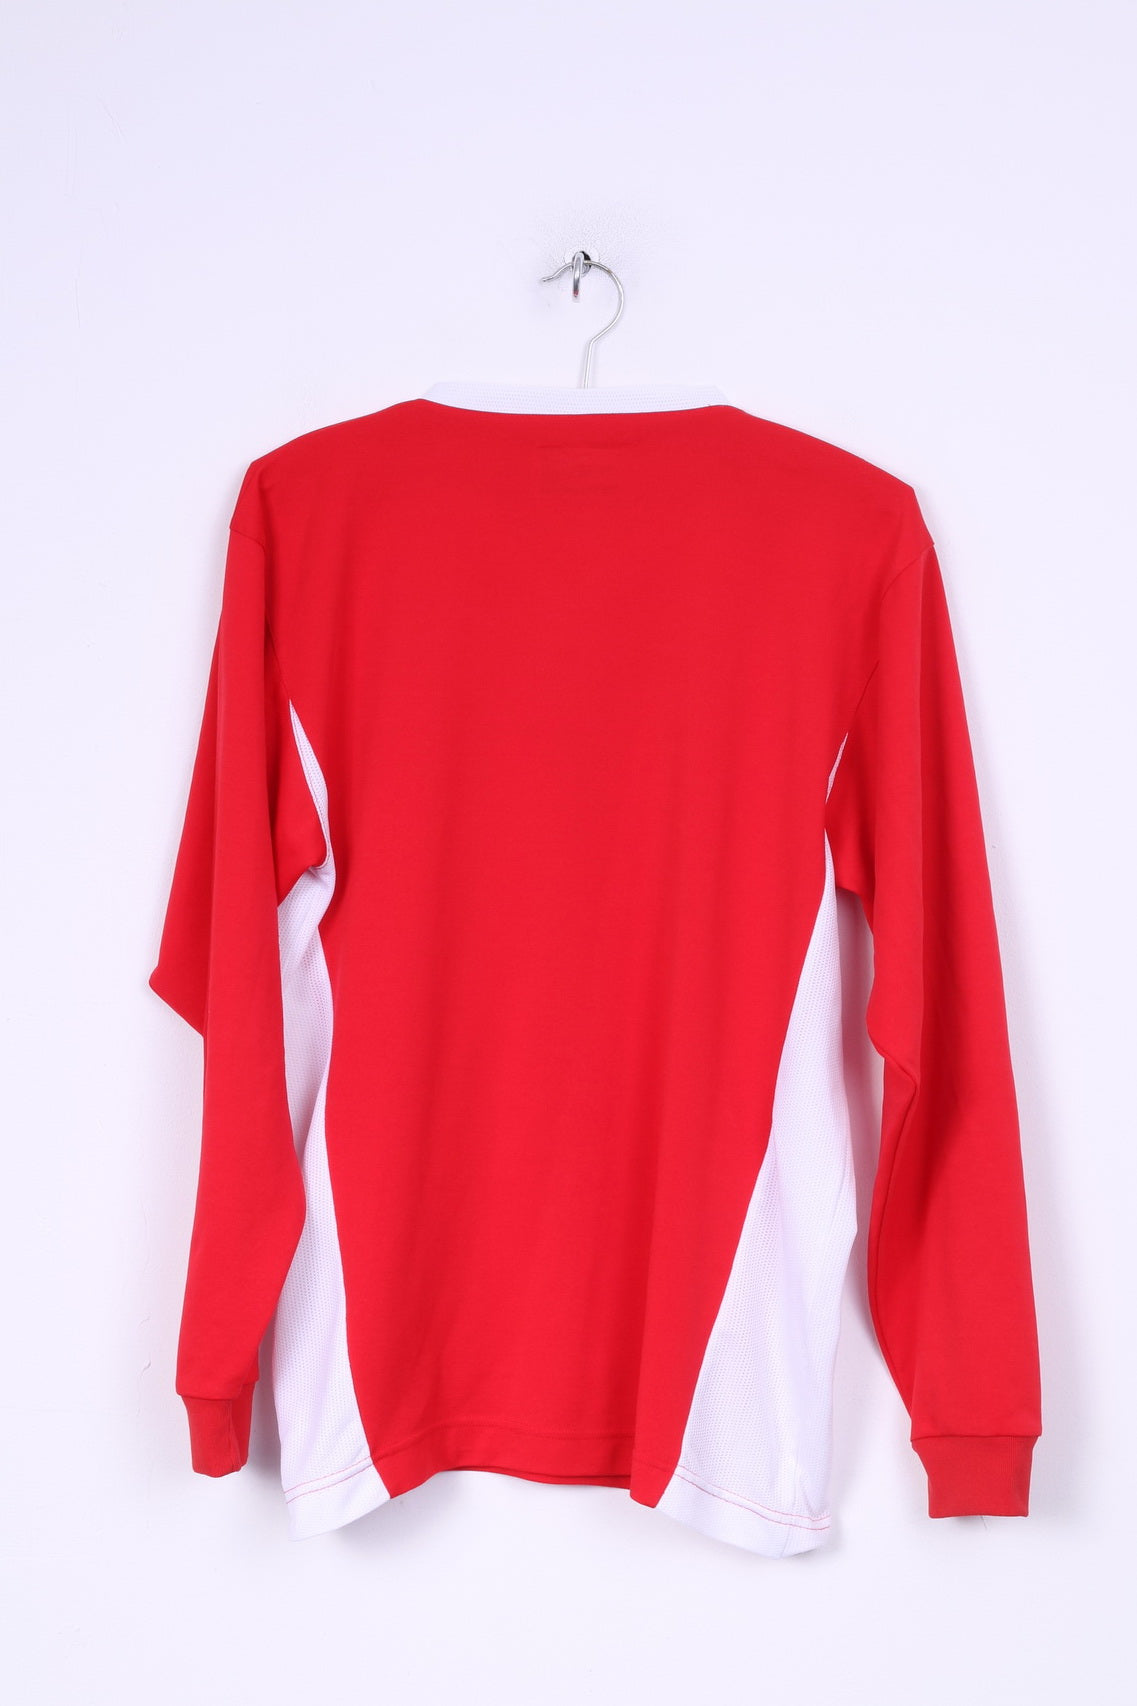 Puma Mens M Long Sleeved Shirt Red Sport V Neck Trainig Top